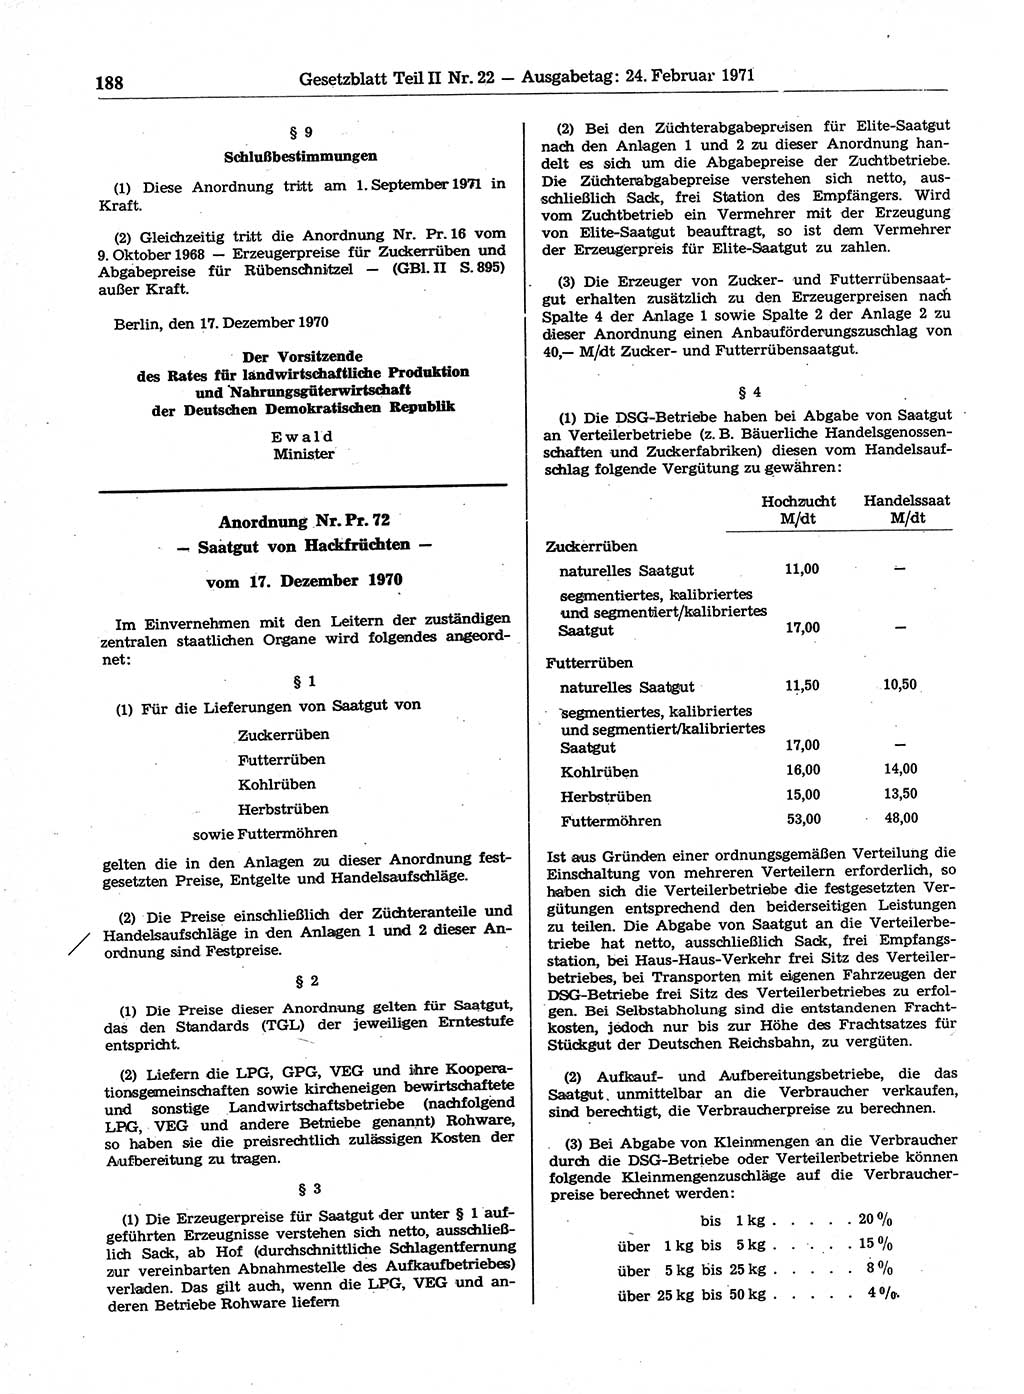 Gesetzblatt (GBl.) der Deutschen Demokratischen Republik (DDR) Teil ⅠⅠ 1971, Seite 188 (GBl. DDR ⅠⅠ 1971, S. 188)